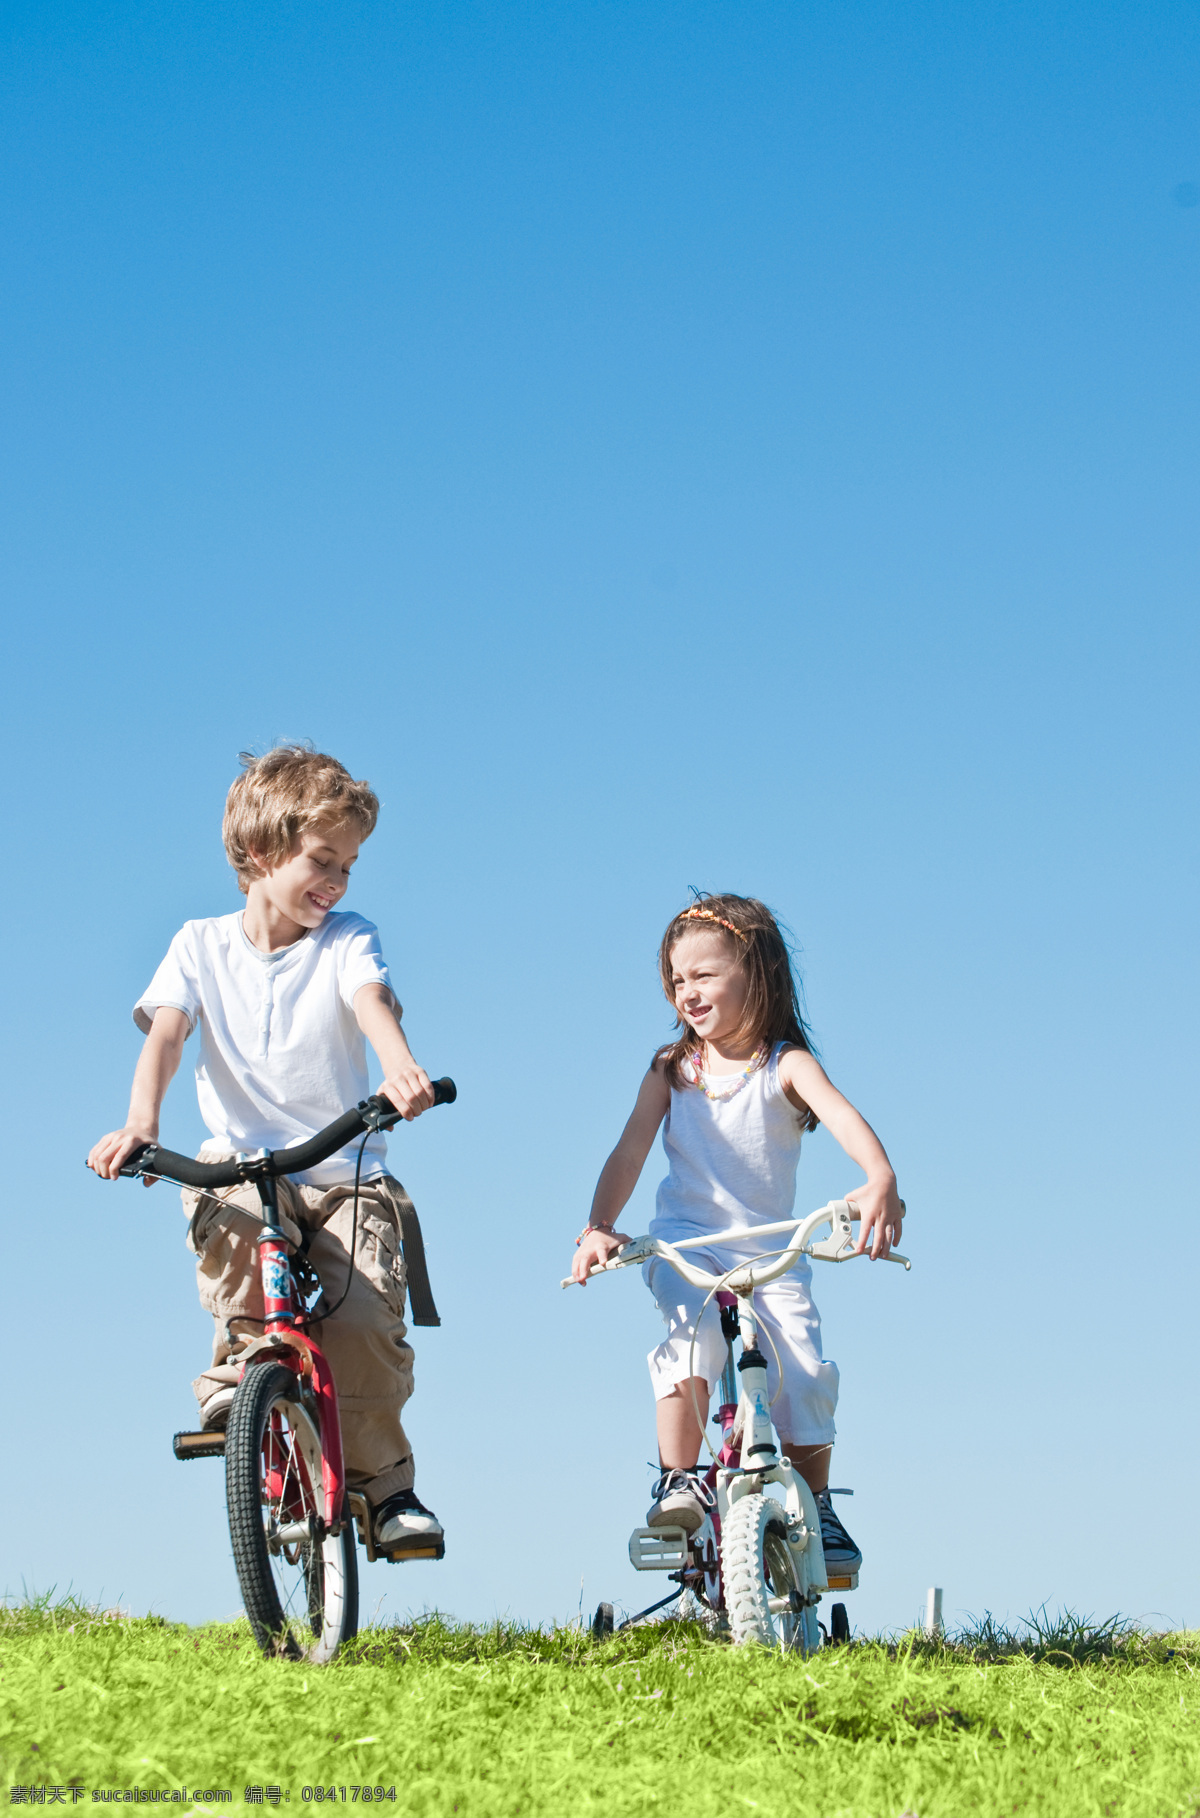 骑 自行车 小孩 女孩 男孩 人物 草地 蓝天 儿童图片 人物图片